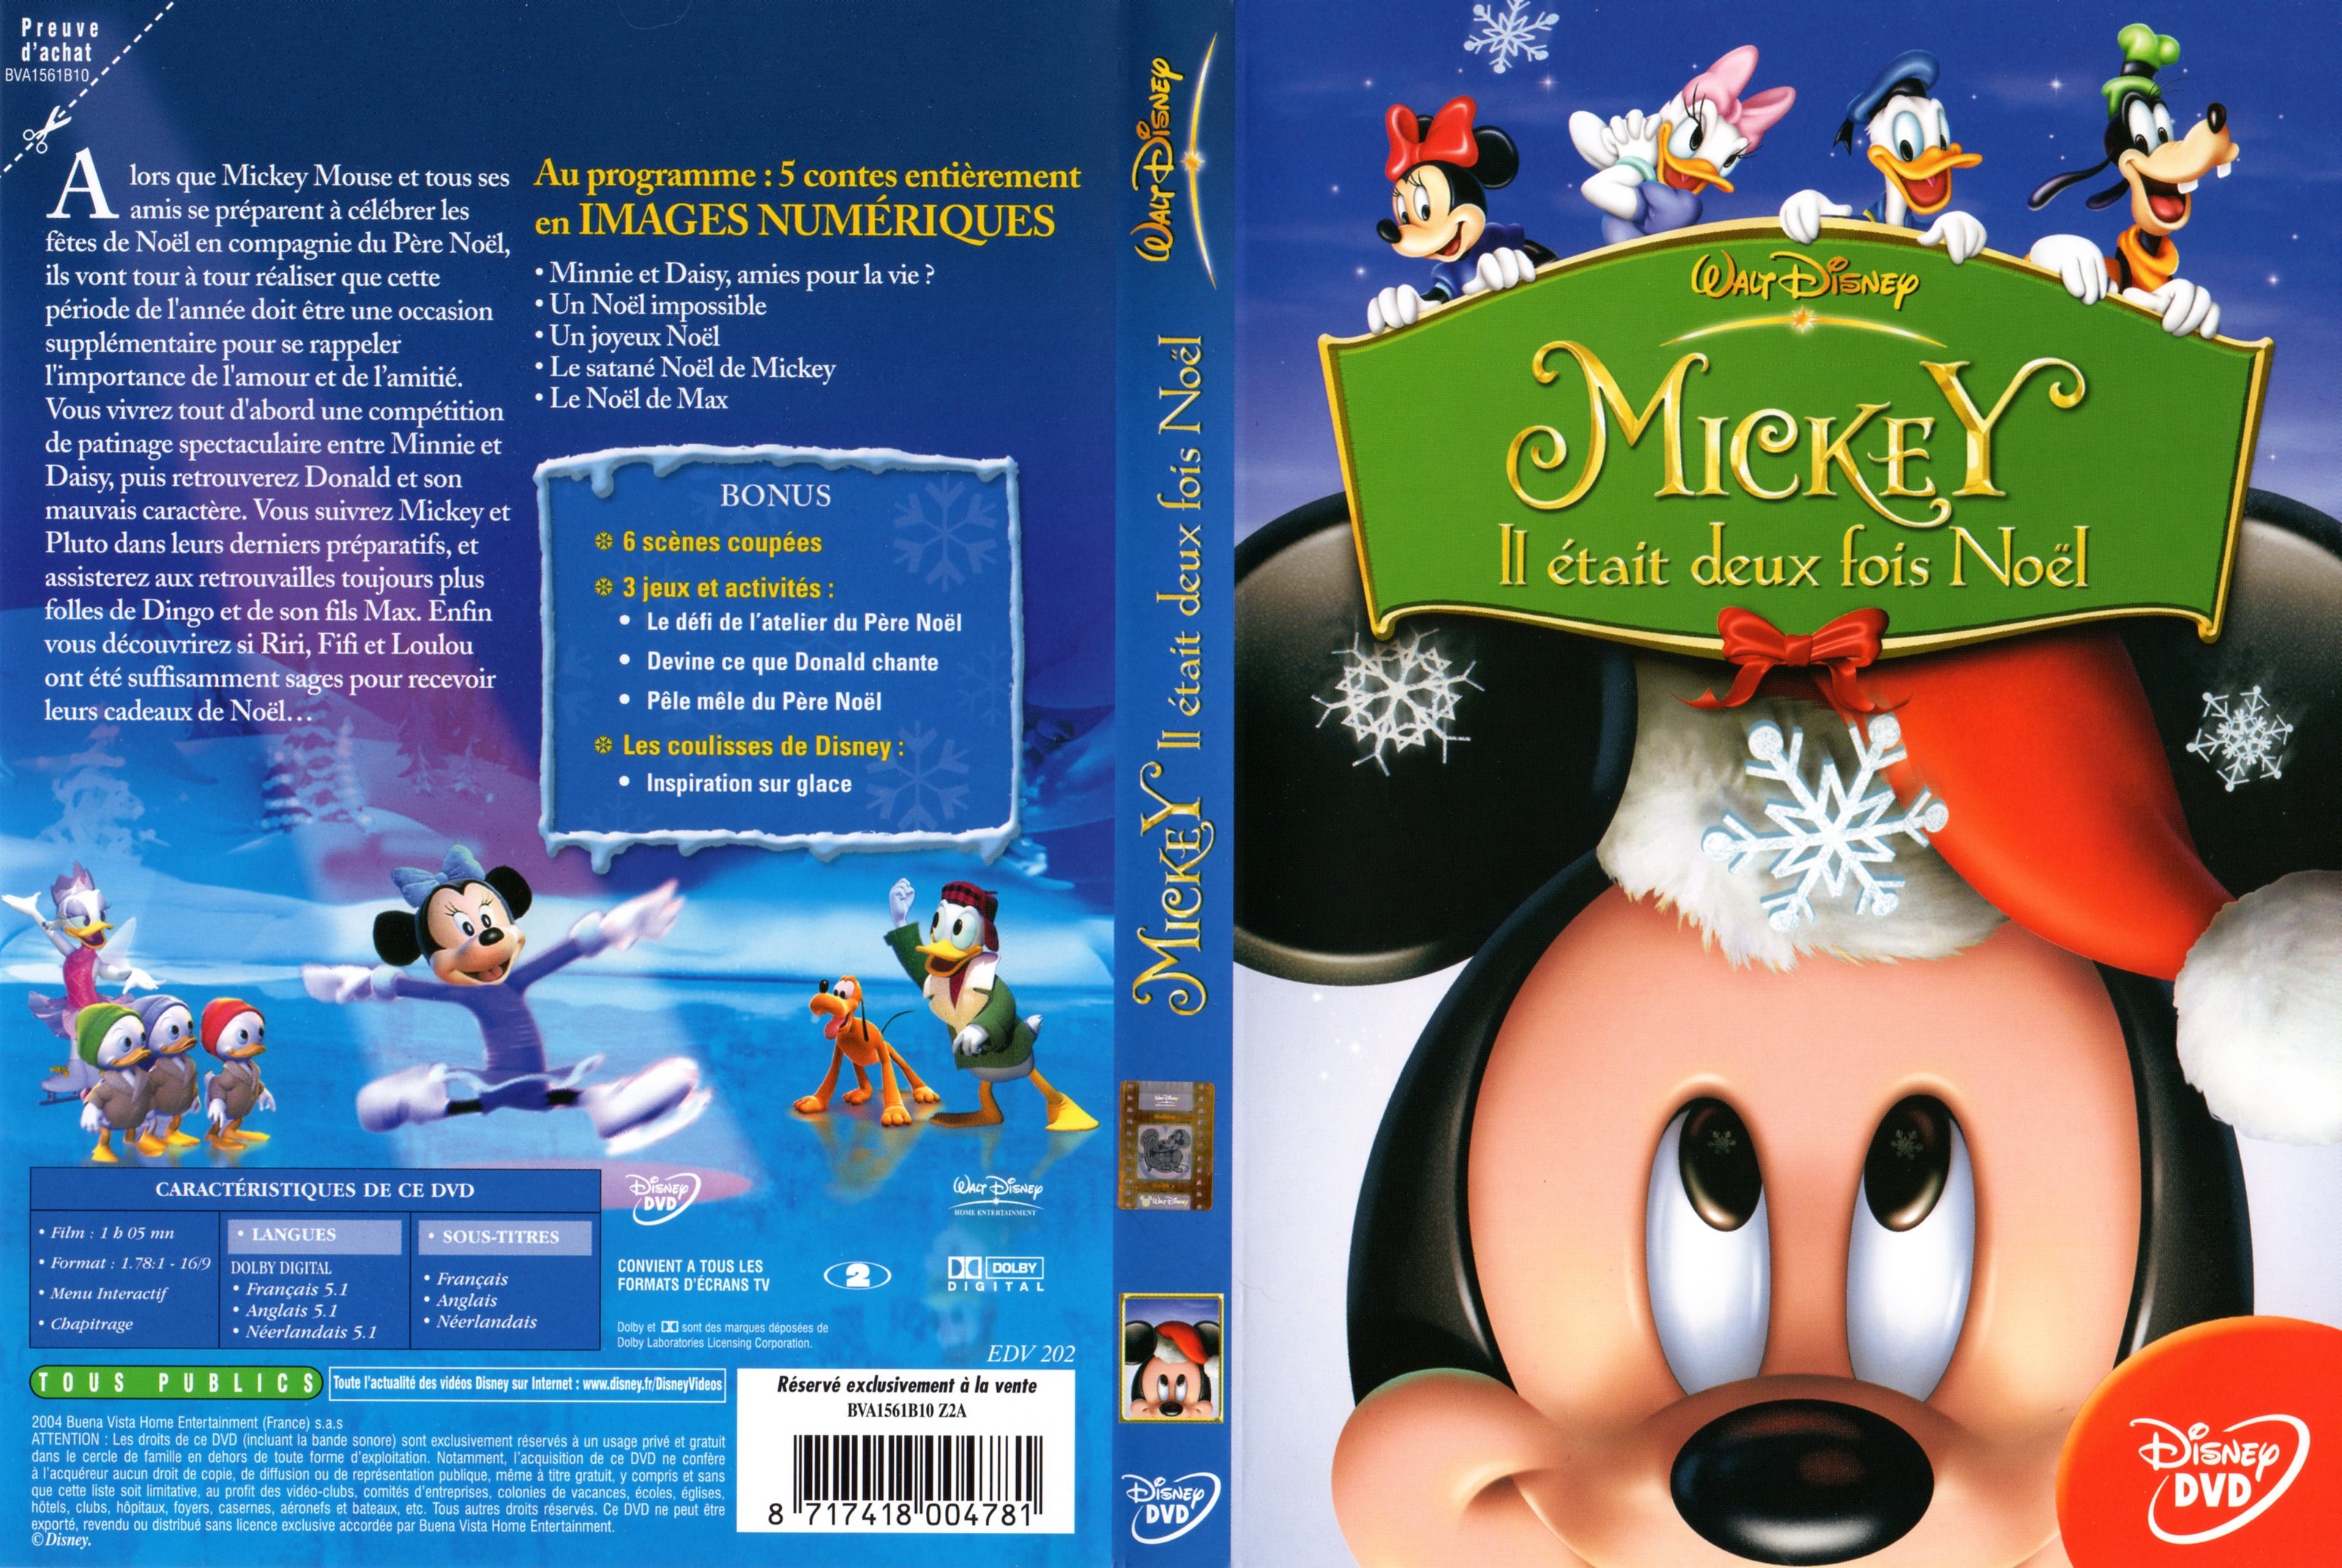 Jaquette DVD Mickey il tait deux fois Noel